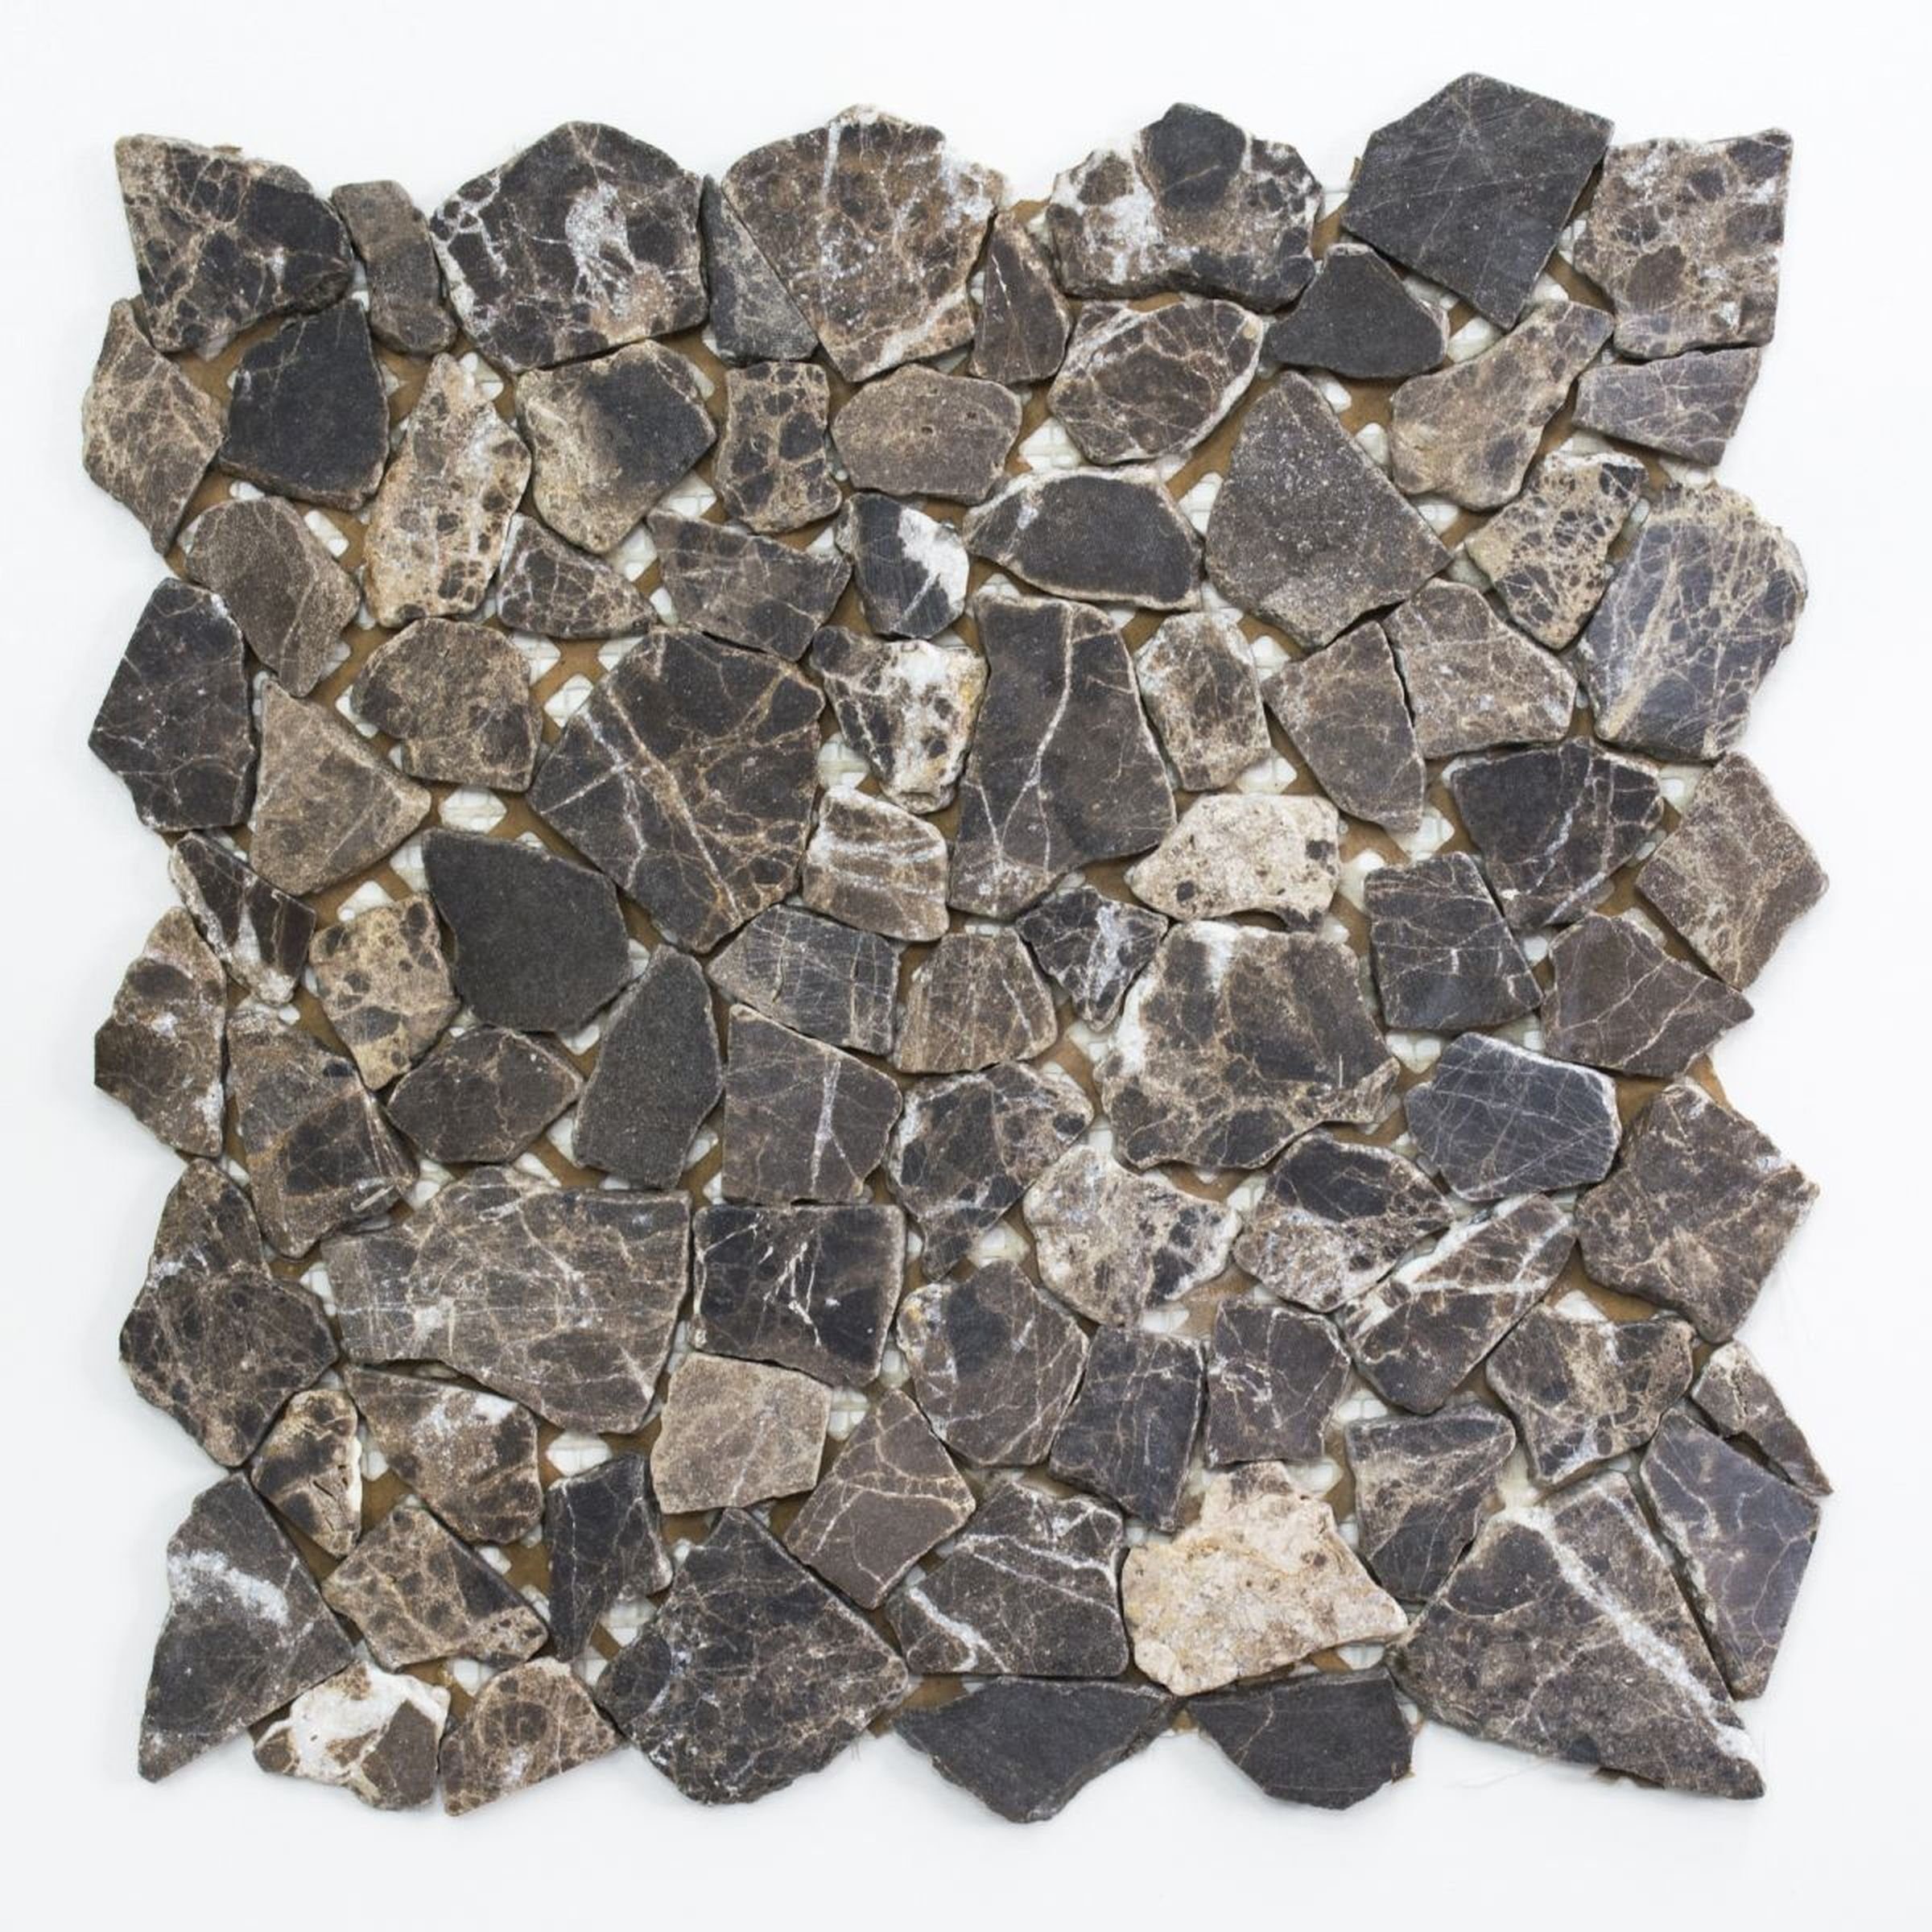 Mosani Bodenfliese Mosaik Bruch Marmor Naturstein beige dunkelbraun Wandfliese Küche Bad